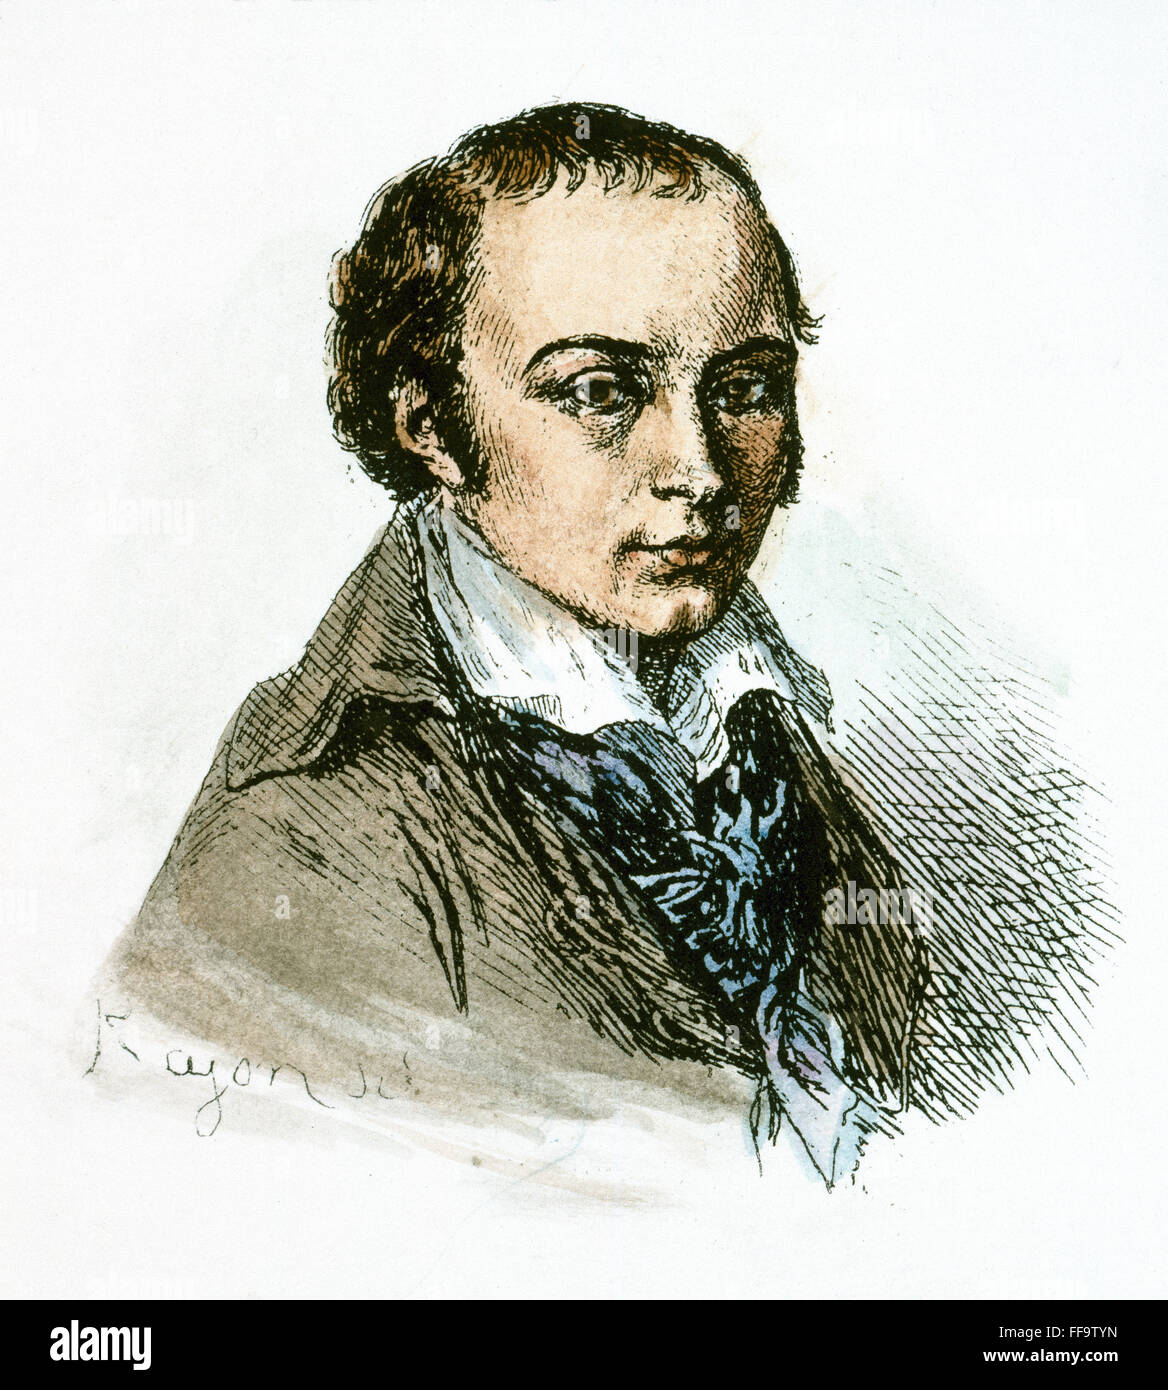 ANDRE-MARIE de CHENIER /n(1762-1794). Französischer Dichter. Radierung nach einem Porträt von Joseph Benoit SuvΘe während Chenier gemacht wurde in Saint-Lazare im Jahre 1794 eingesperrt. Stockfoto